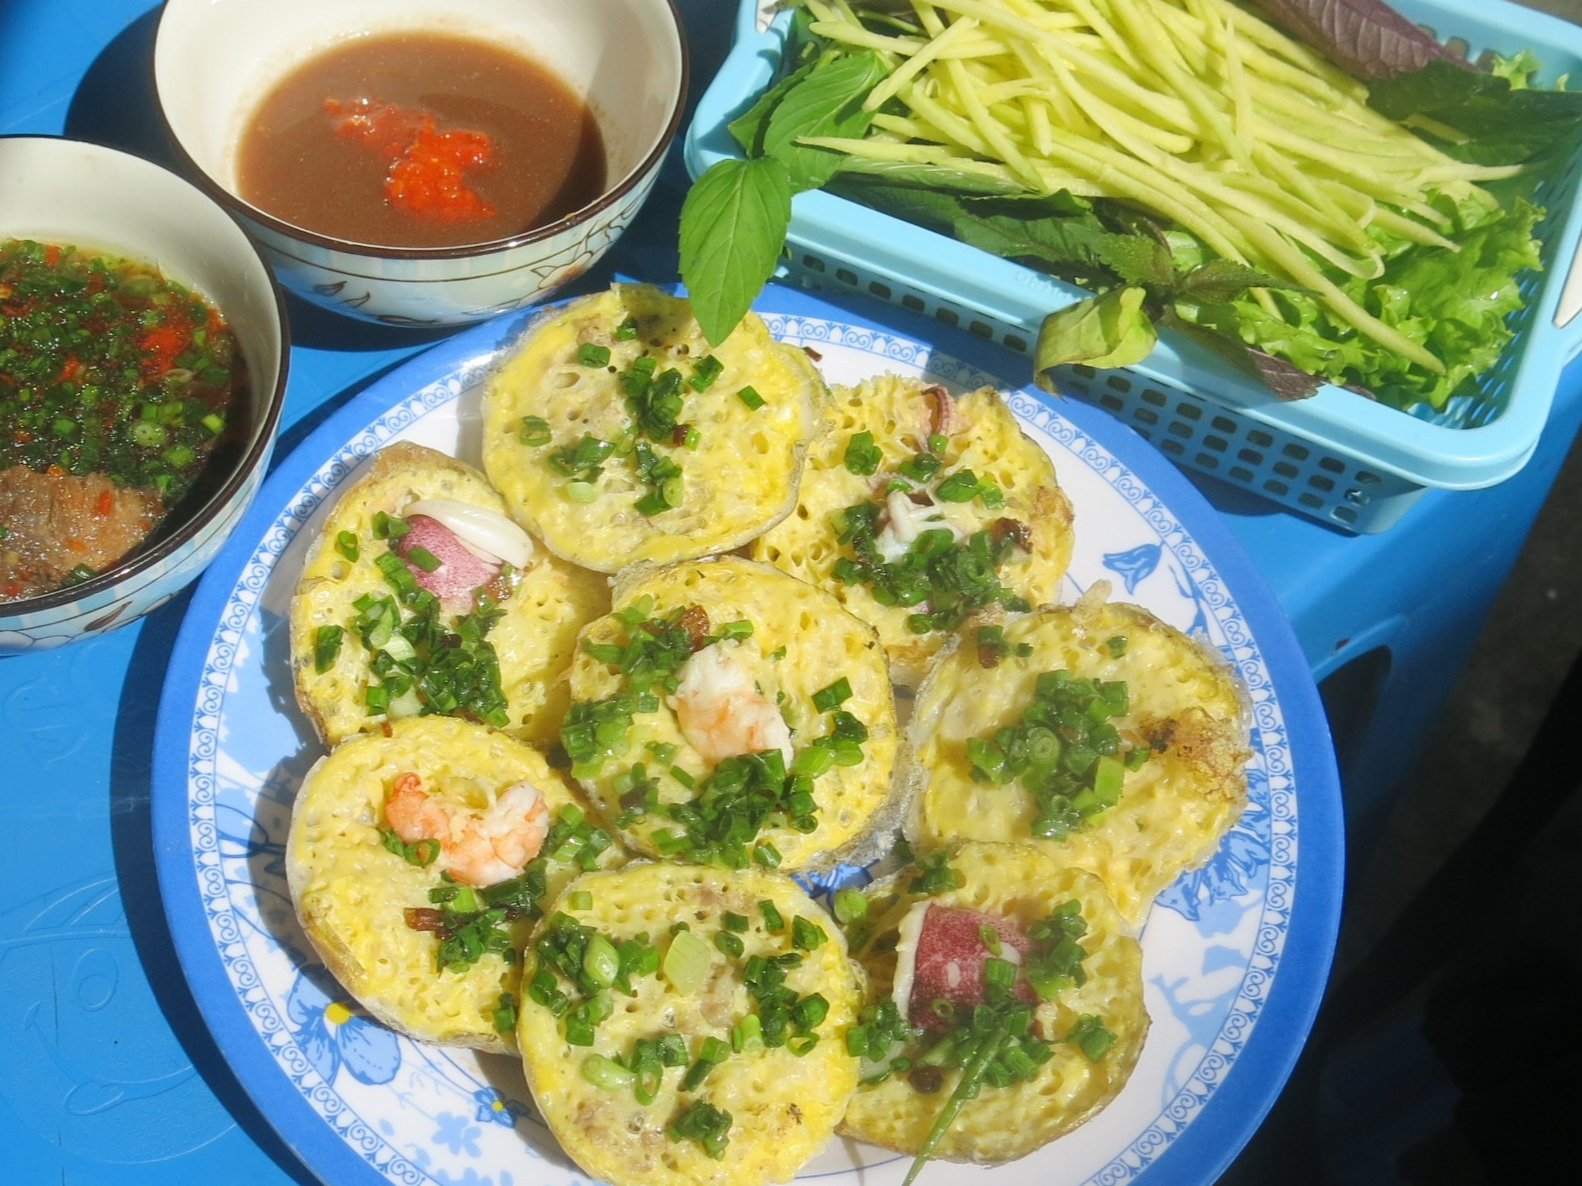 Sài Gòn quán: Bánh căn hồn vía Phan Rang mộc mạc bên đường tàu - Ảnh 1.